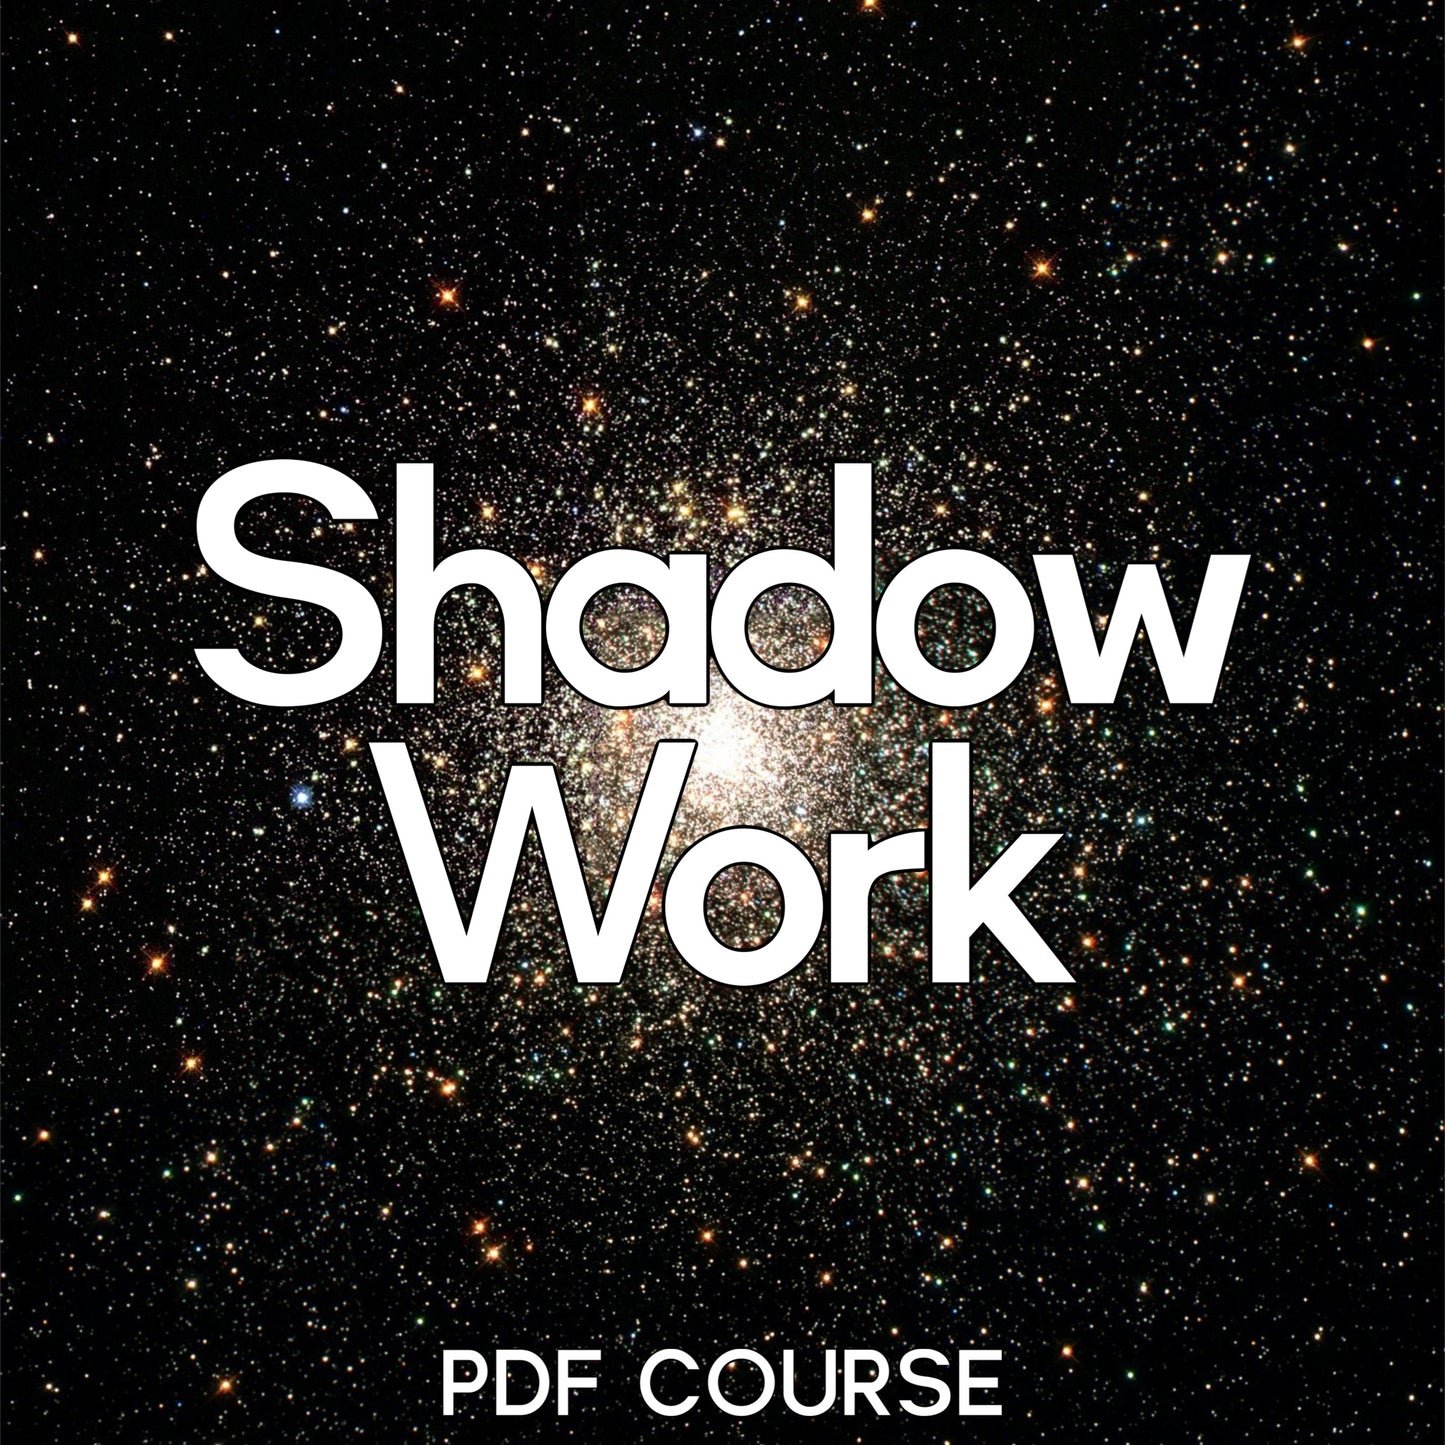 Shadow Work: Written PDF